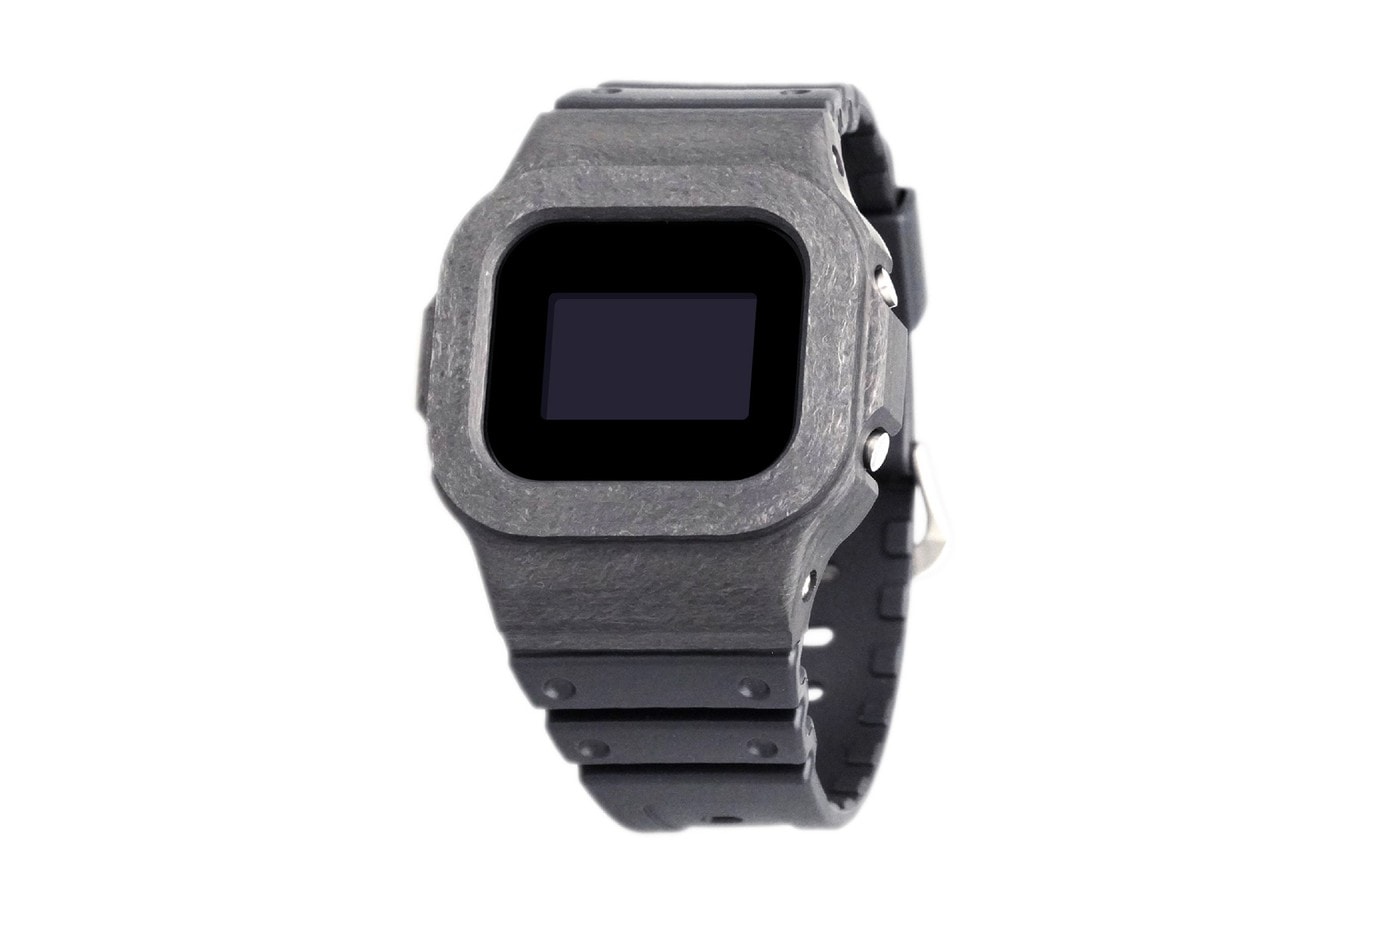 Damue 推出全新碳纖維材質 G-Shock DW-5600 定製錶款